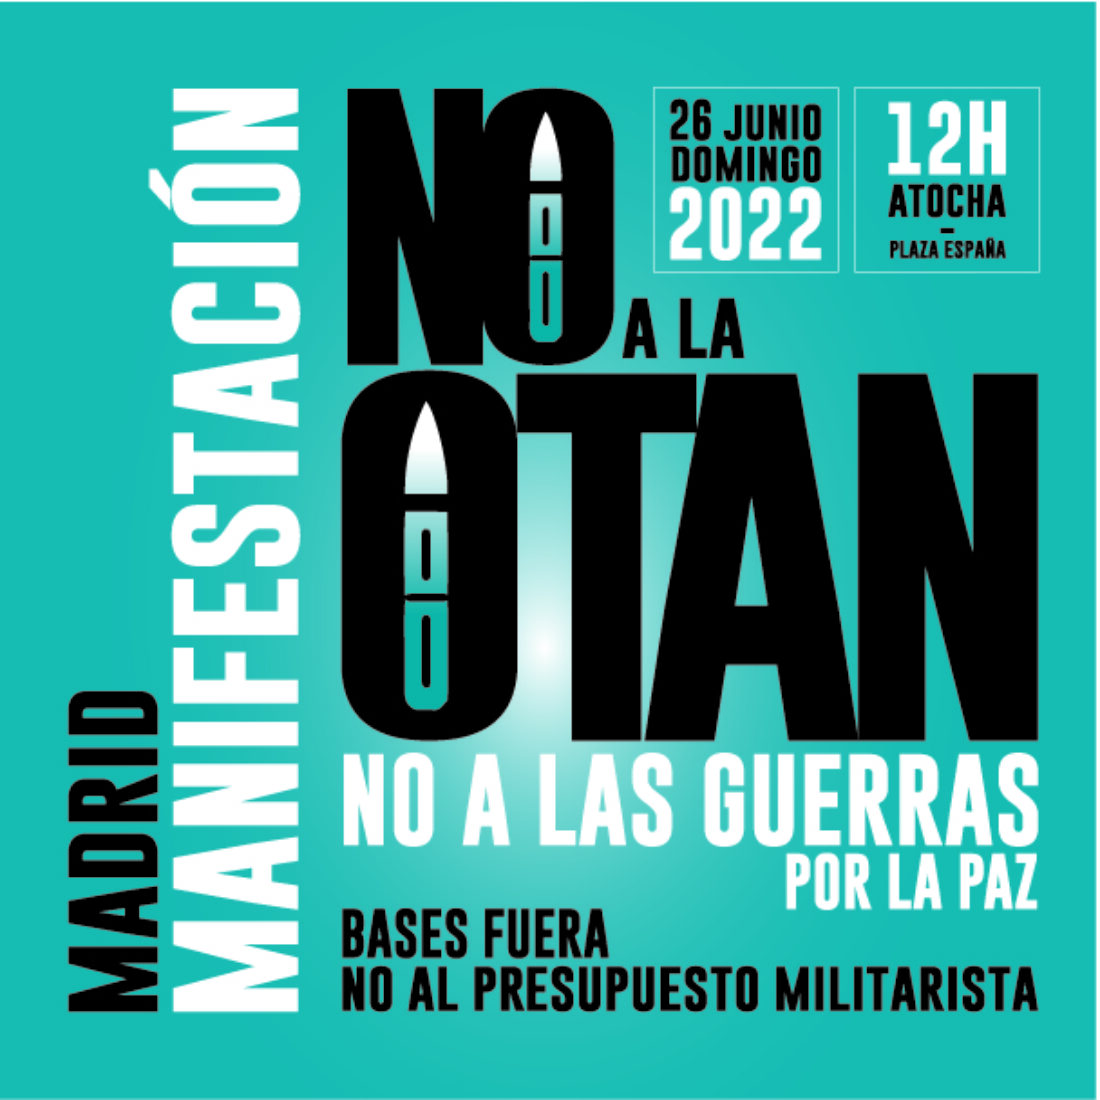 [MAD] CGT participará en las acciones organizadas por la Asamblea Popular contra la Guerra de Madrid, y en la manifestación organizada por esta, por la PEPON y otras organizaciones